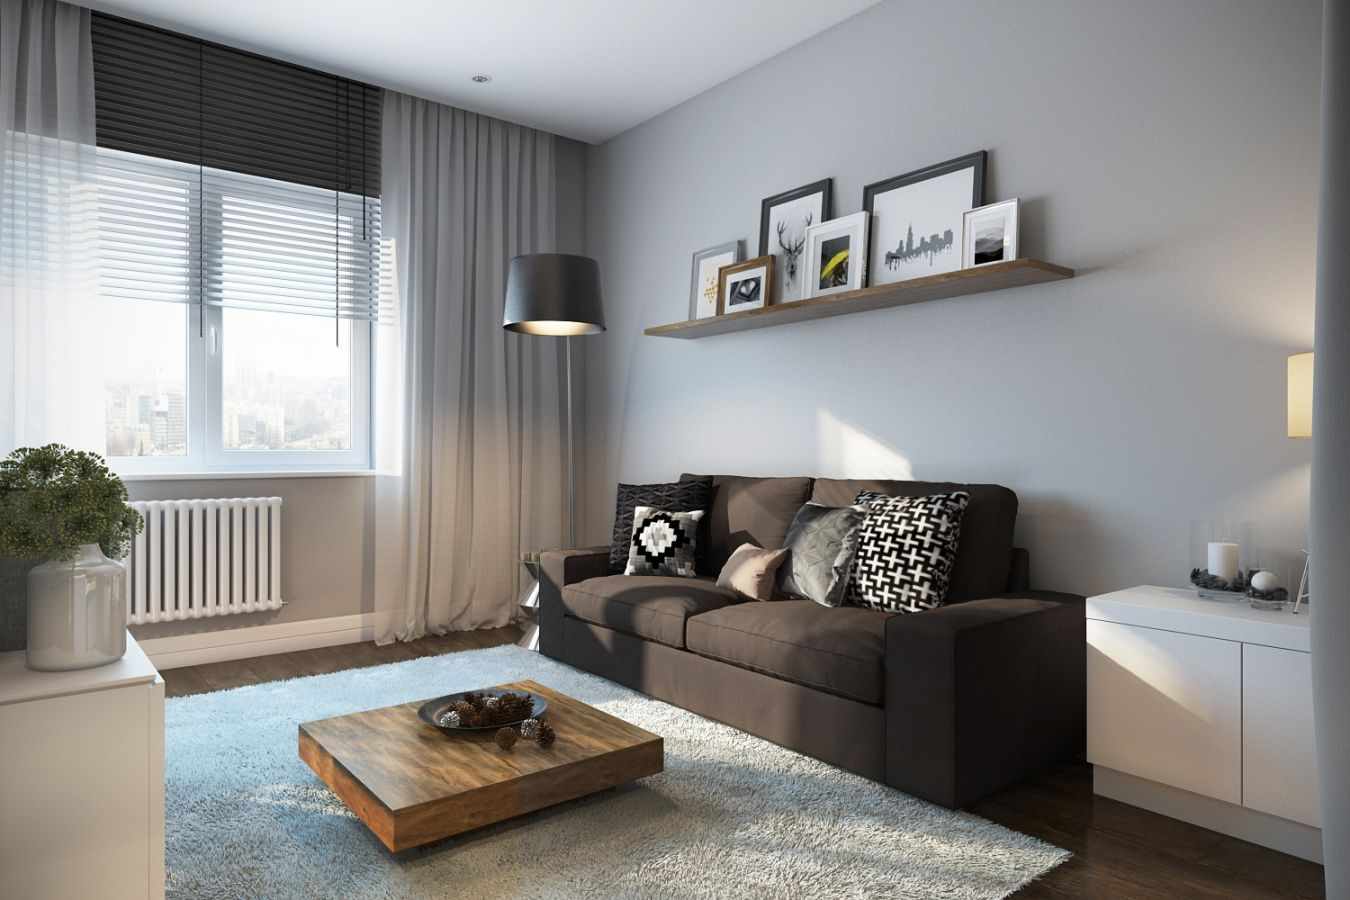 La idea de utilizar un interior luminoso de una sala de estar al estilo minimalista